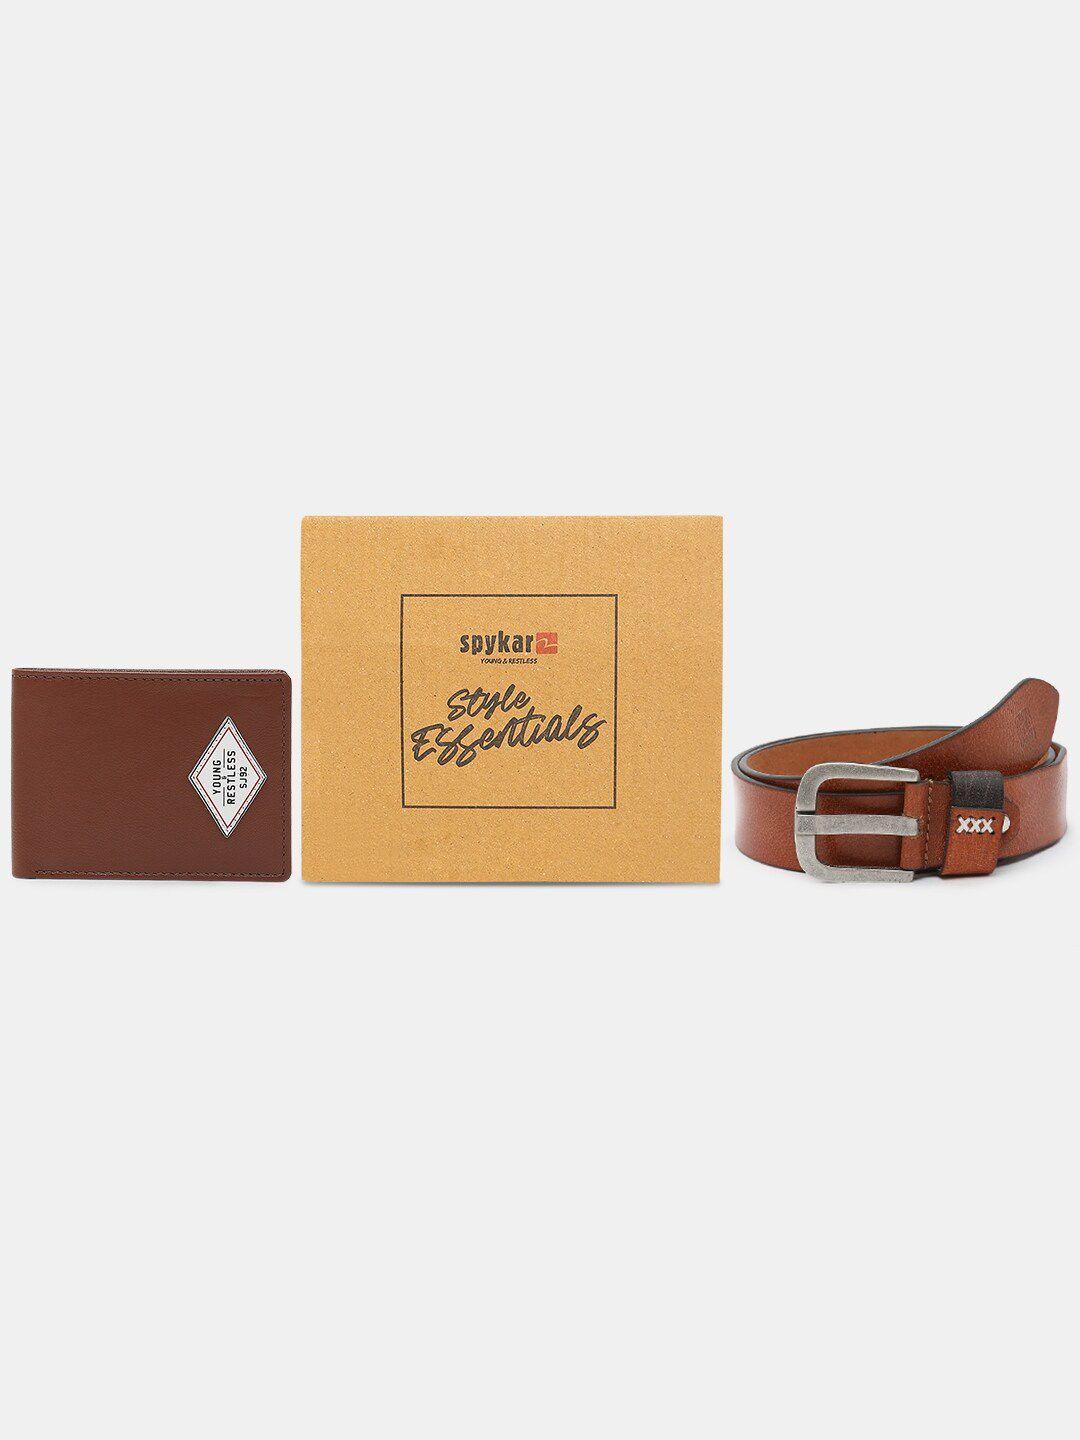 spykar leather belt & wallet combo